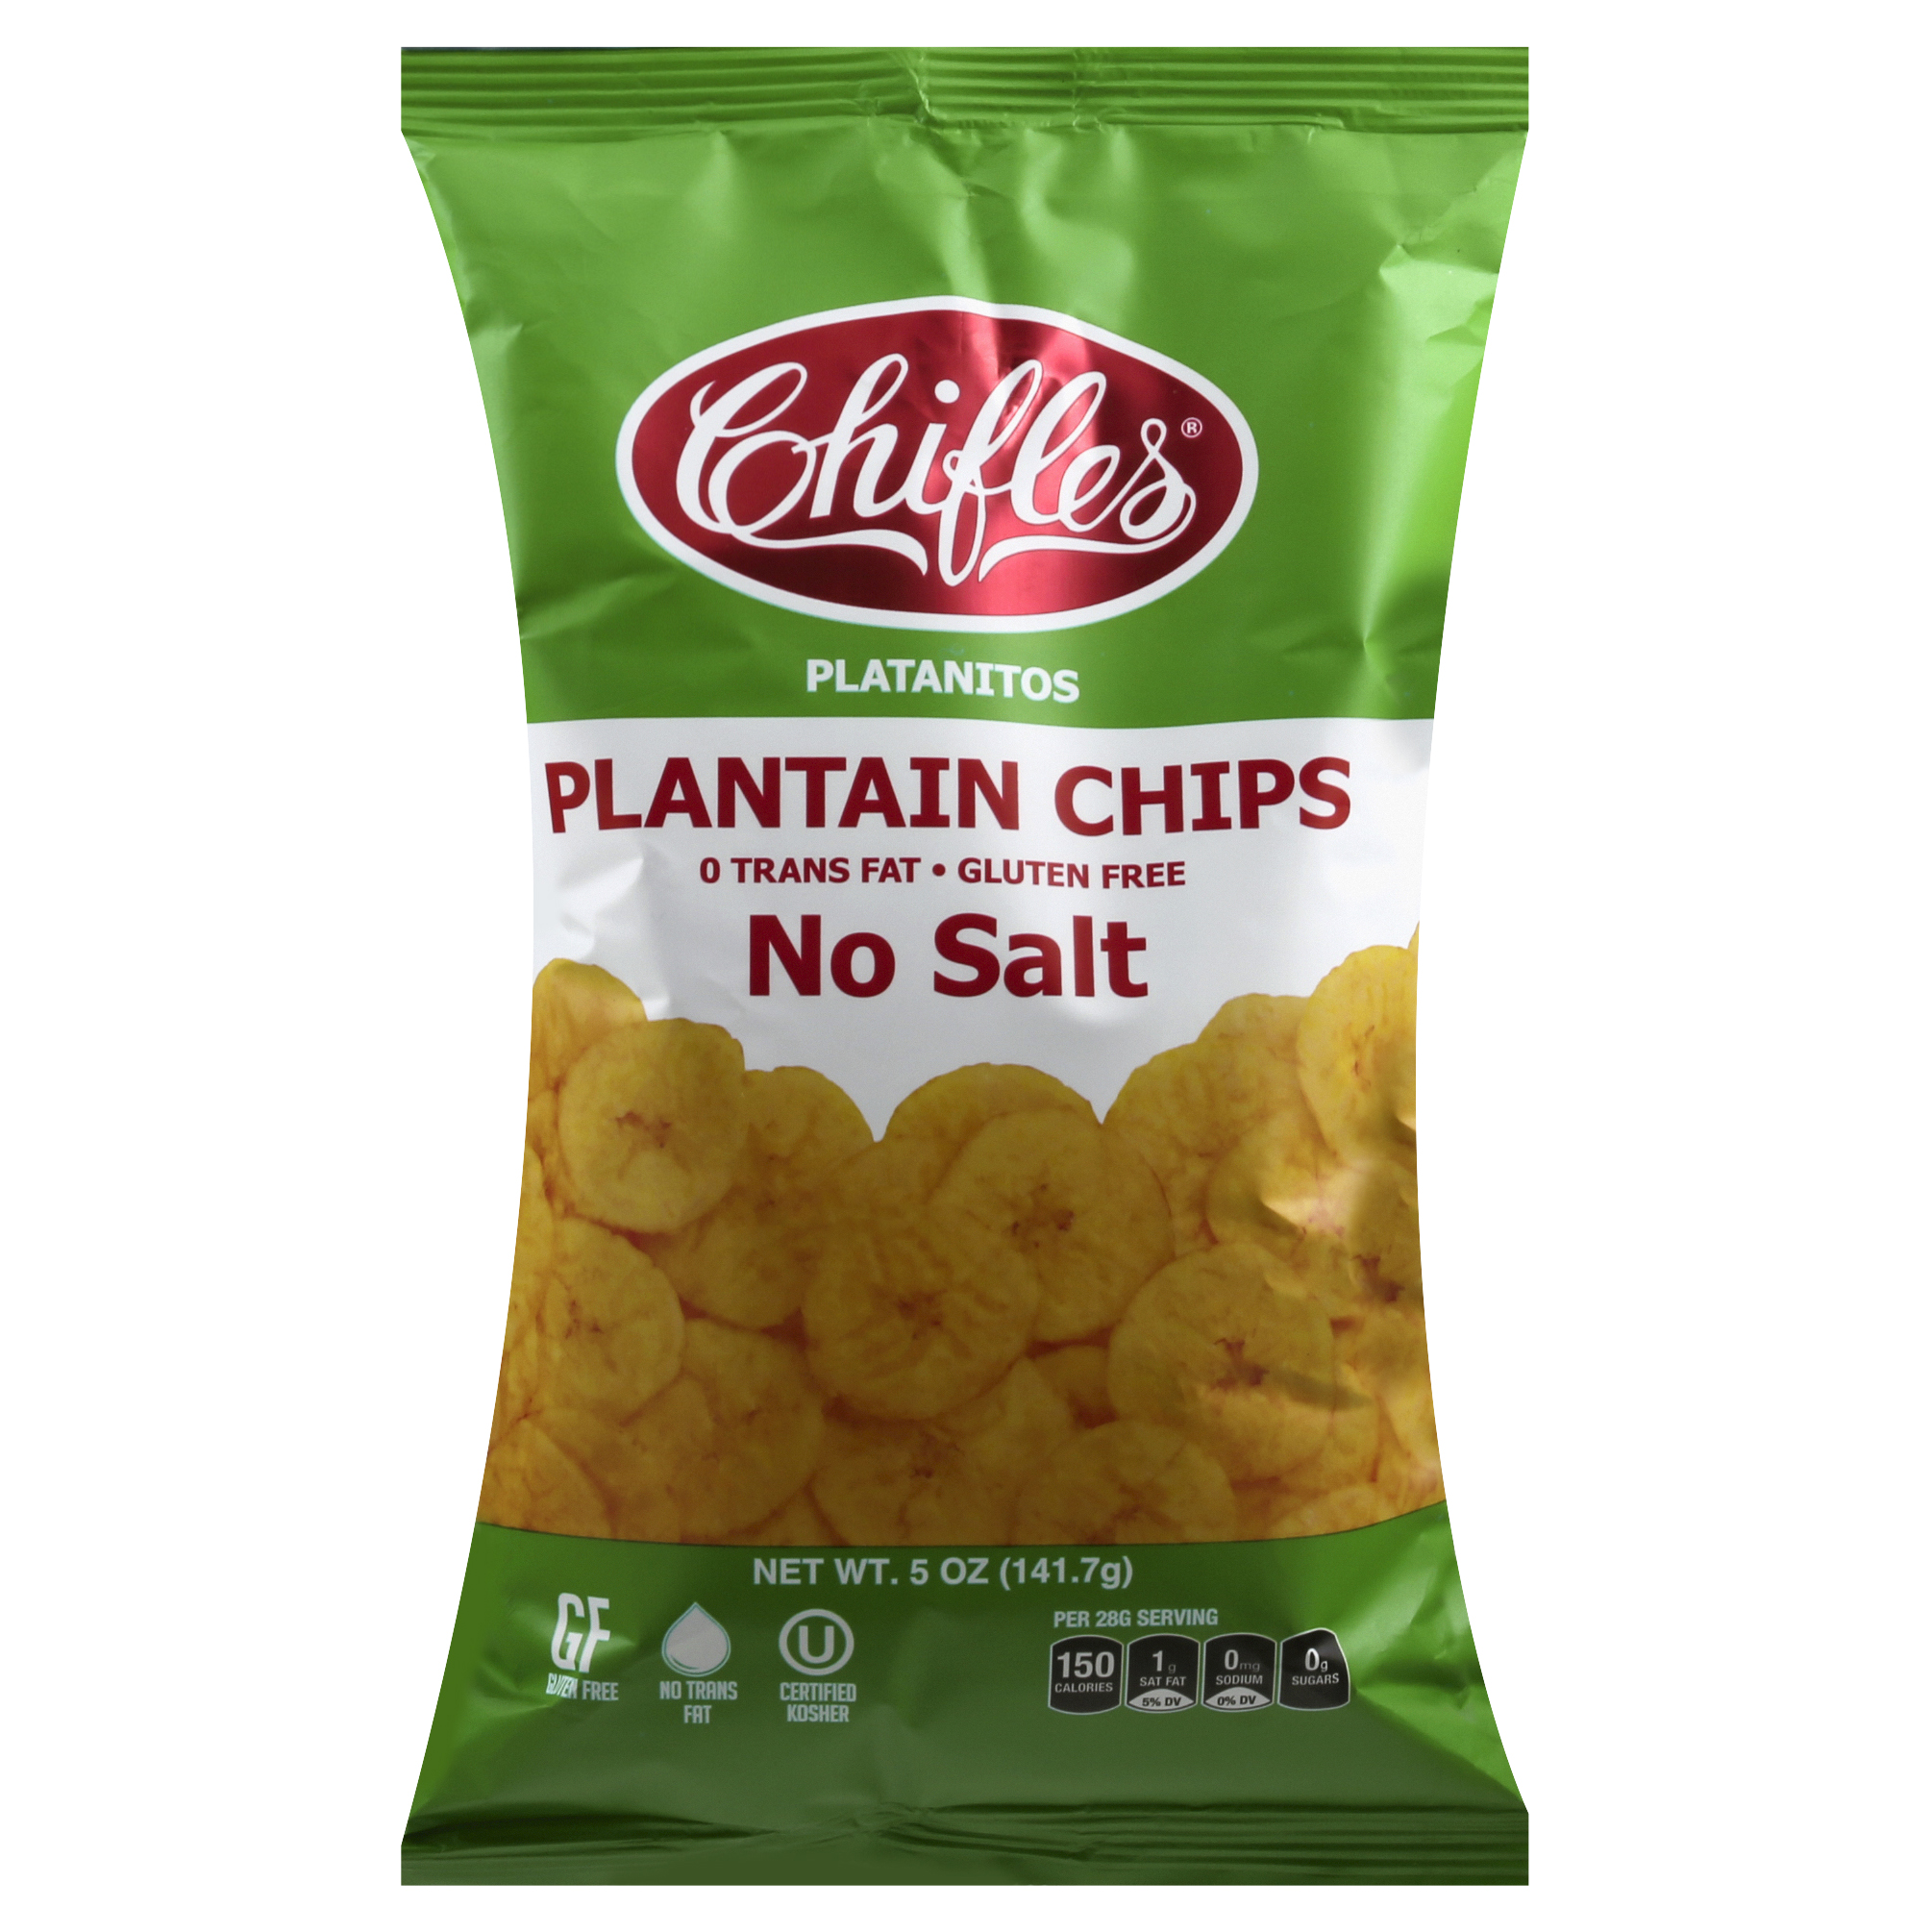 Chifles No Salt Plaintain Chips 5 Oz image